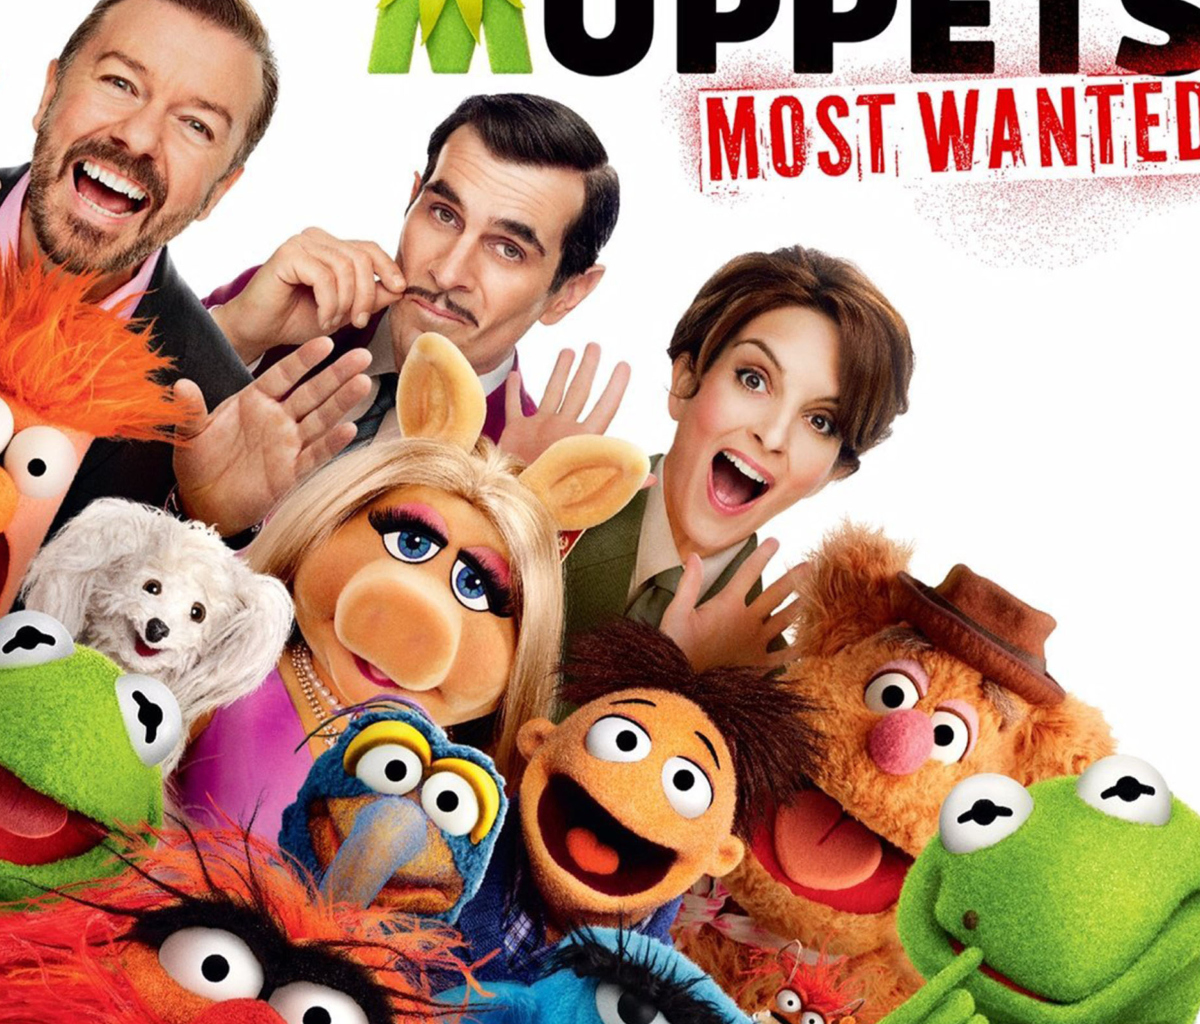 Muppets wallpaper 1200x1024